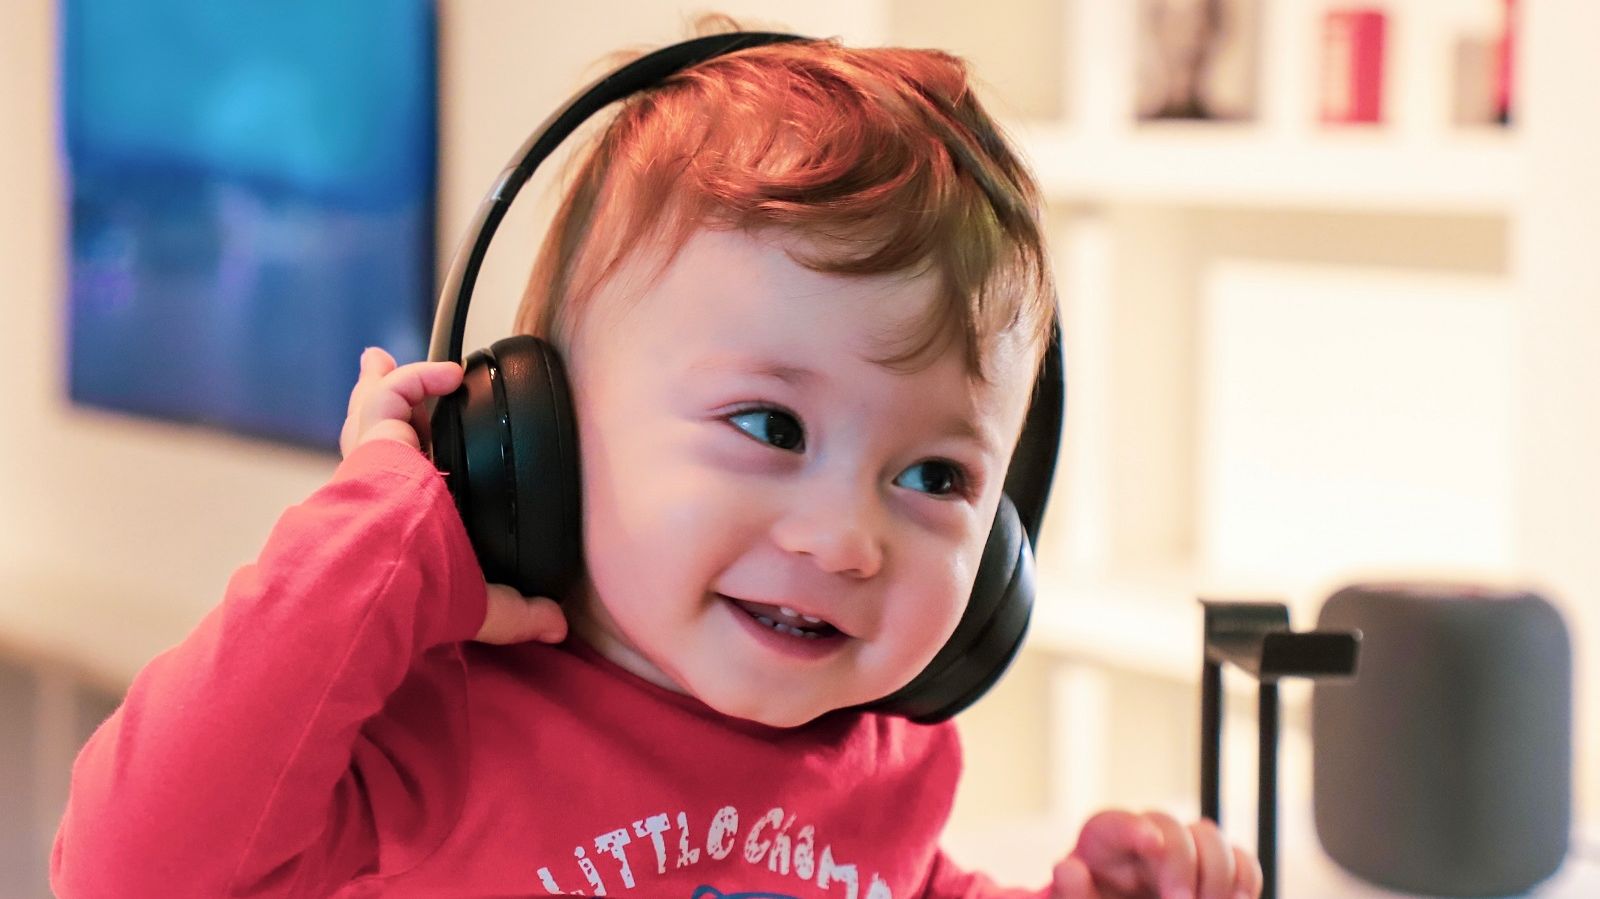 Ein kleines Kind mit großen kopfhörern sieht glücklich aus